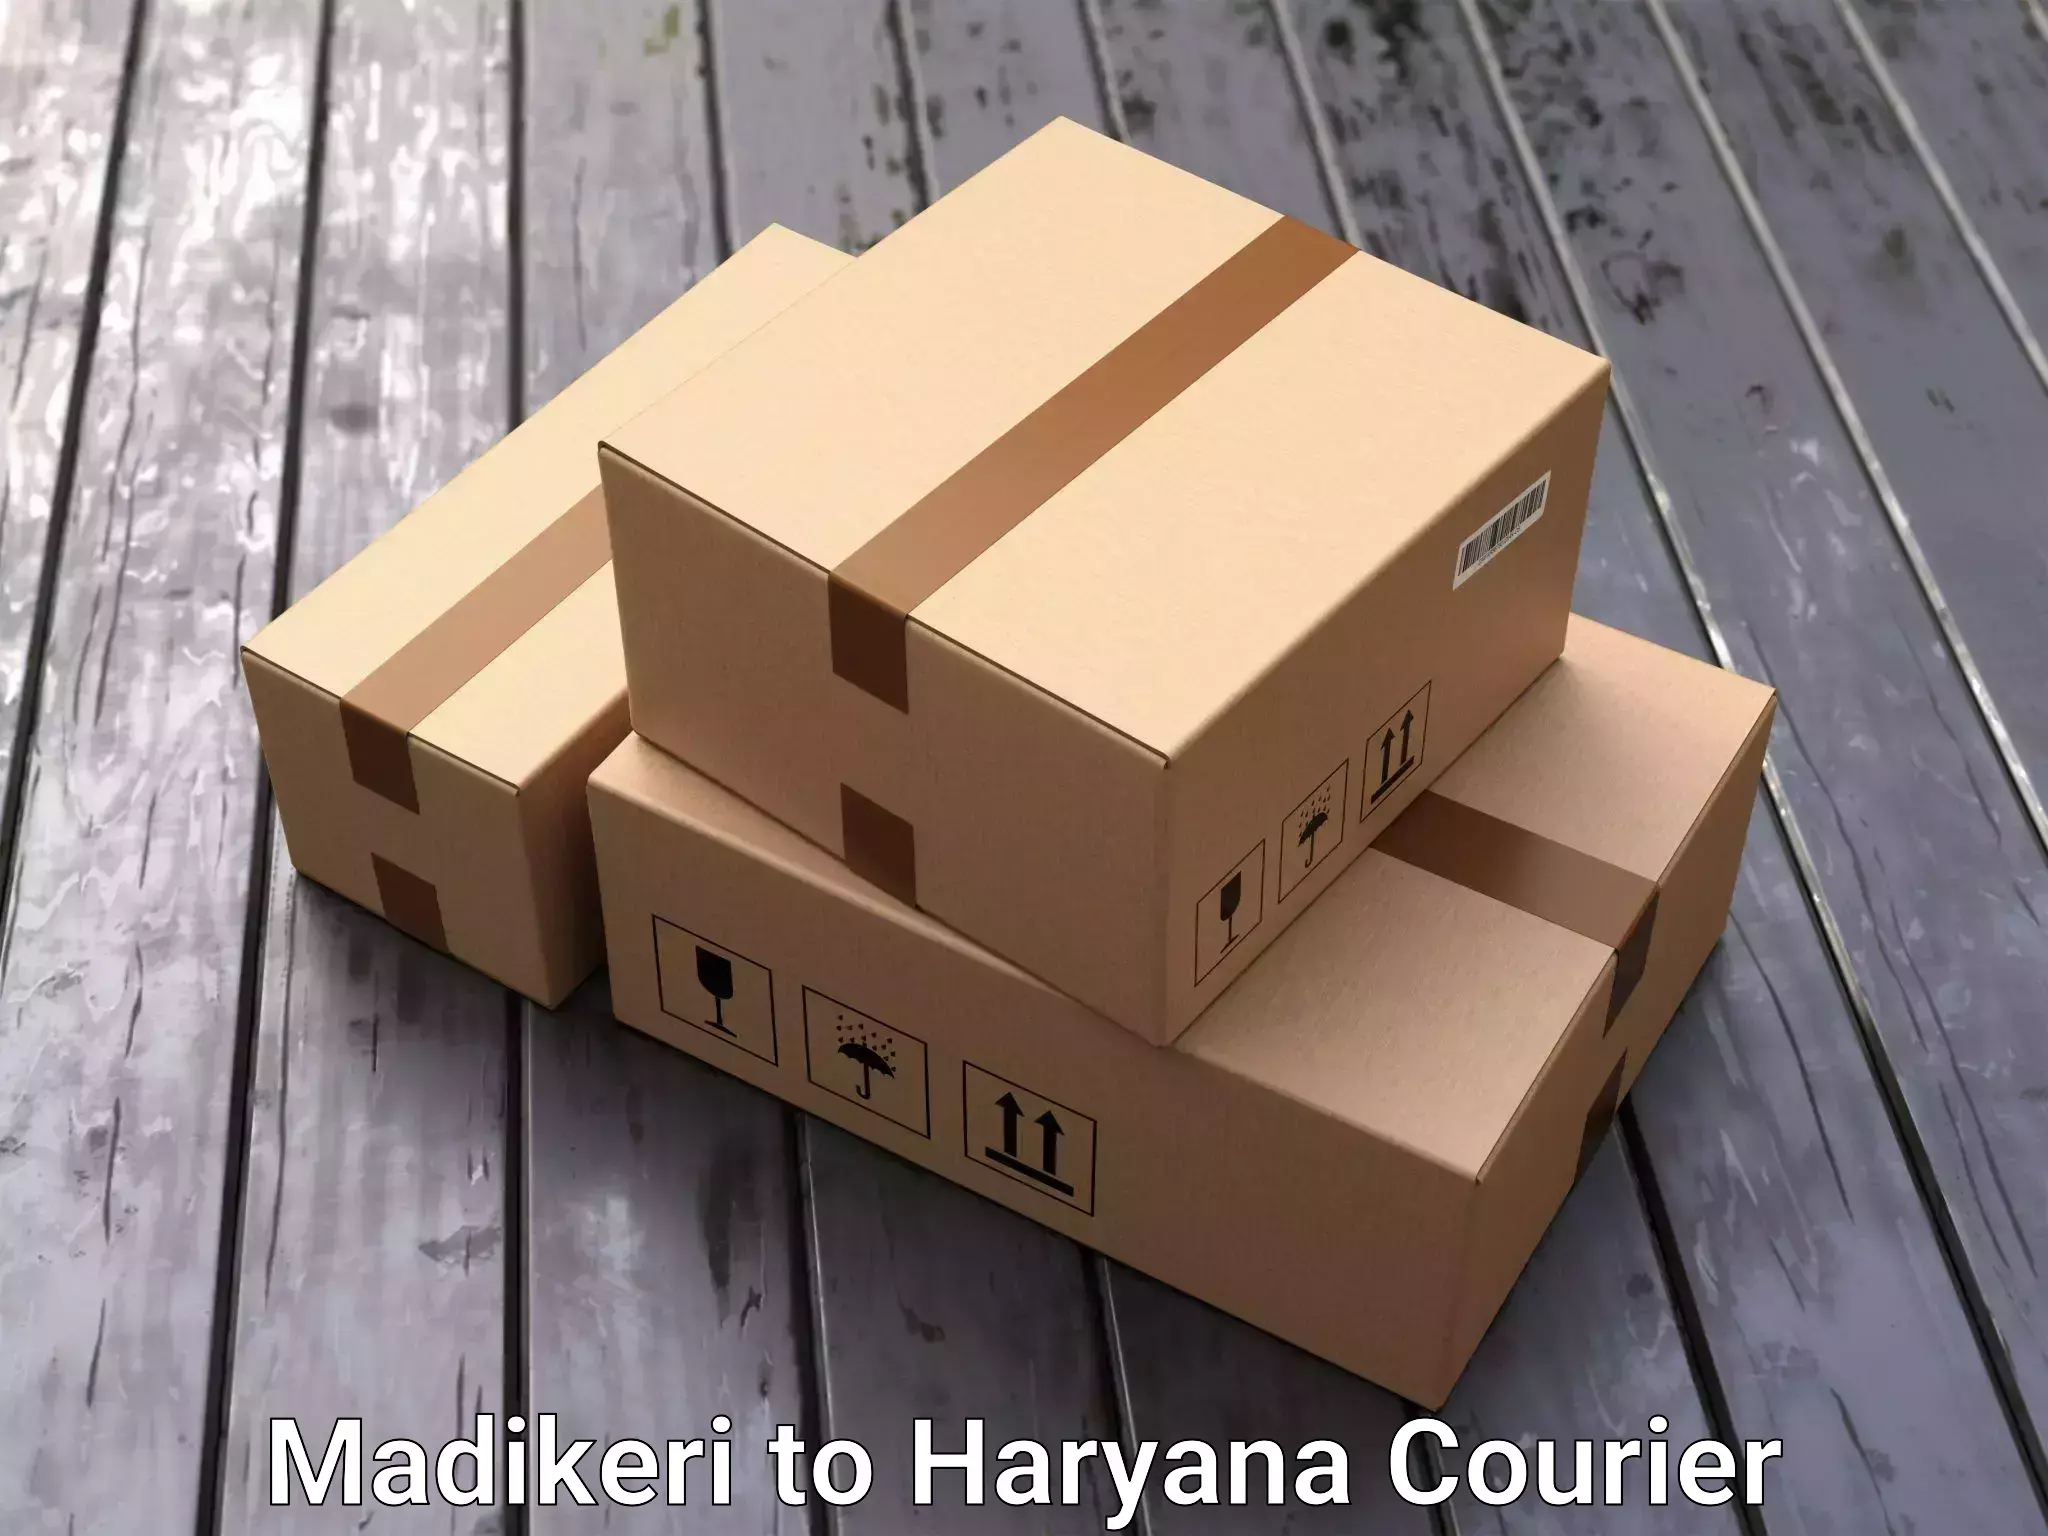 Professional furniture movers Madikeri to IIIT Sonepat